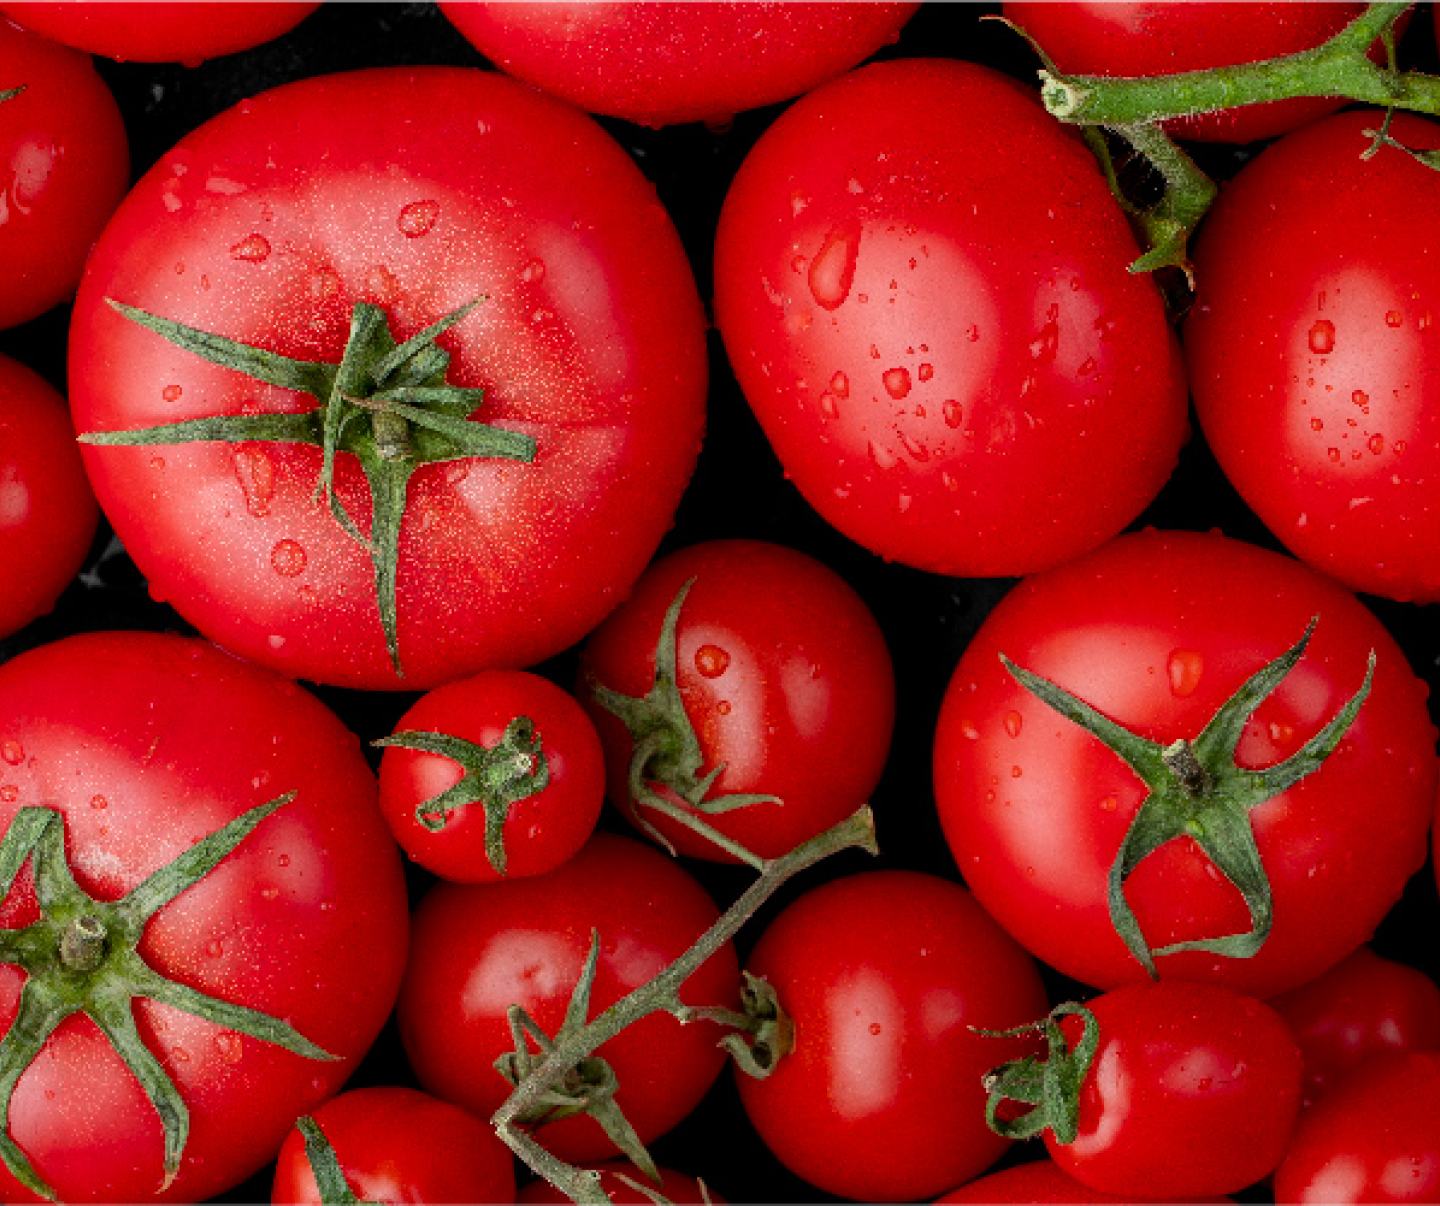 Bushel of Tomatoes